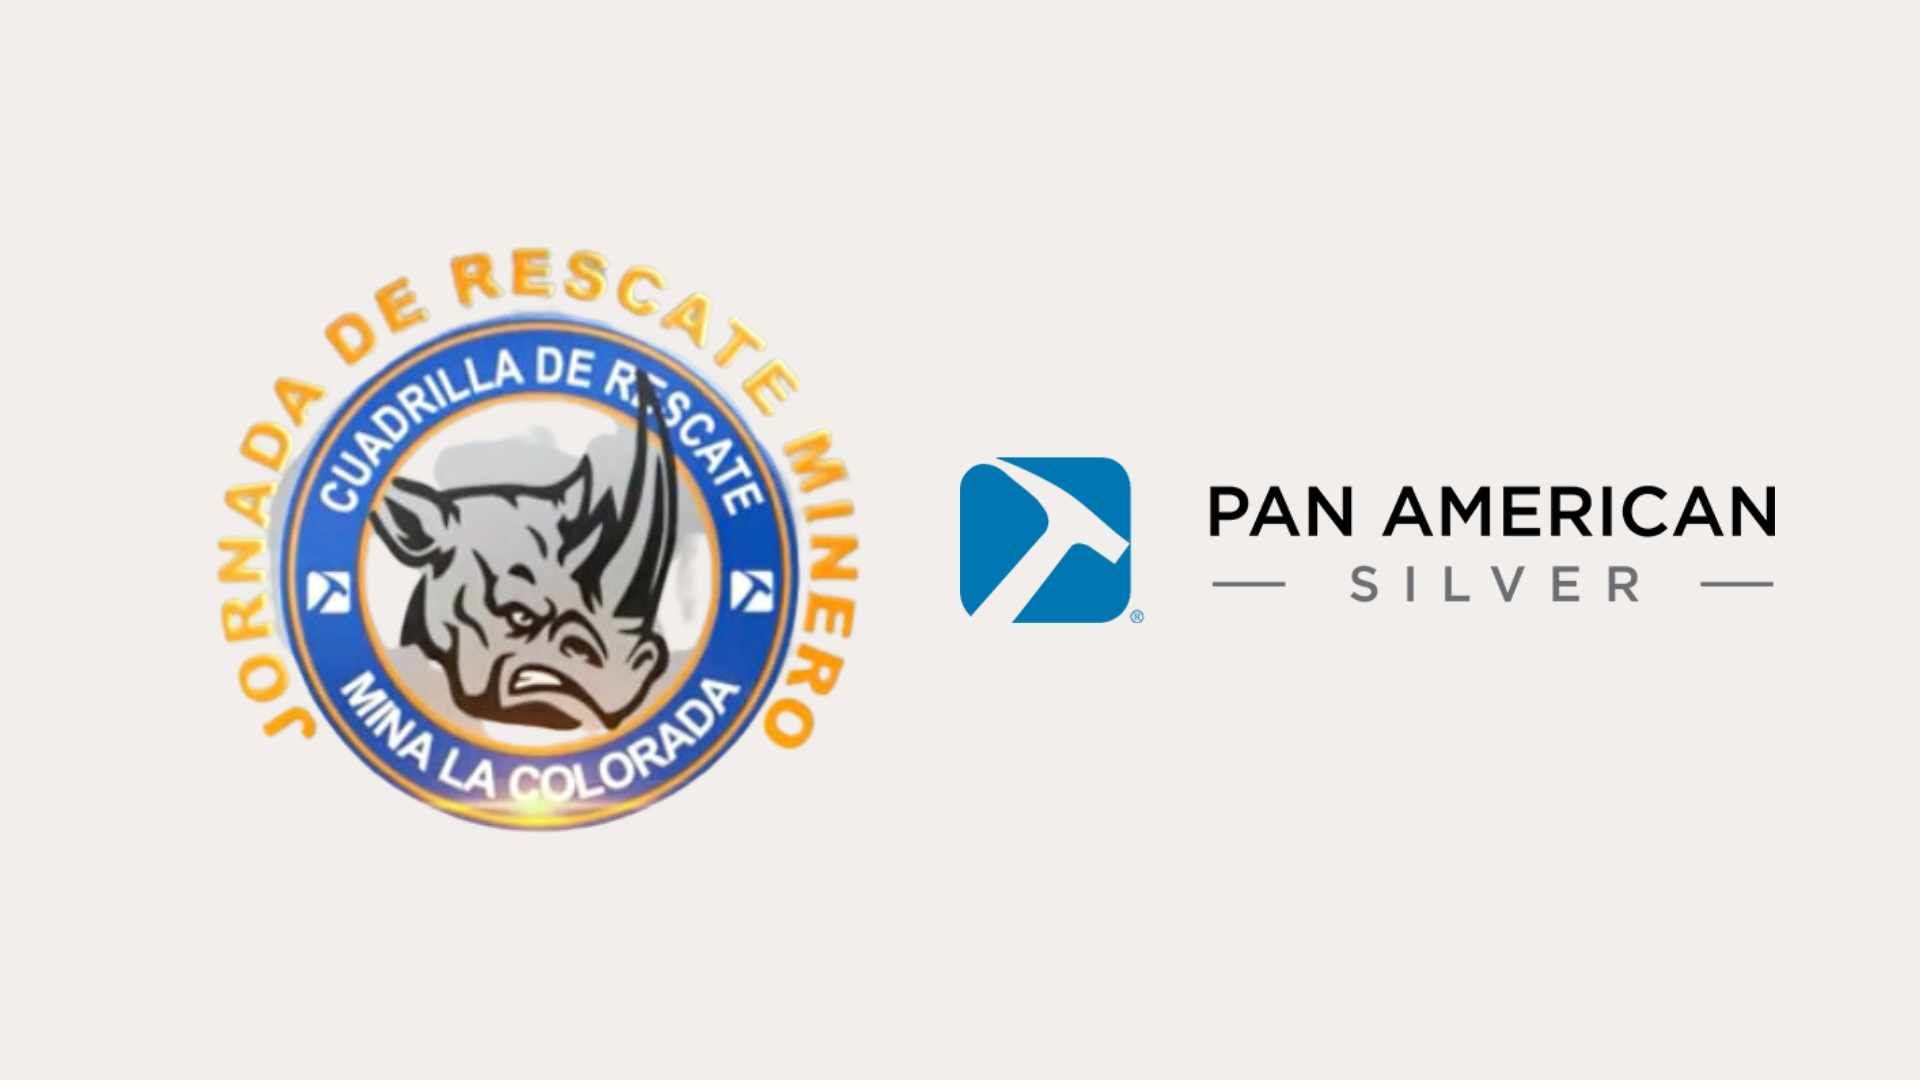 Video: Rescate minero, Pan American Silver